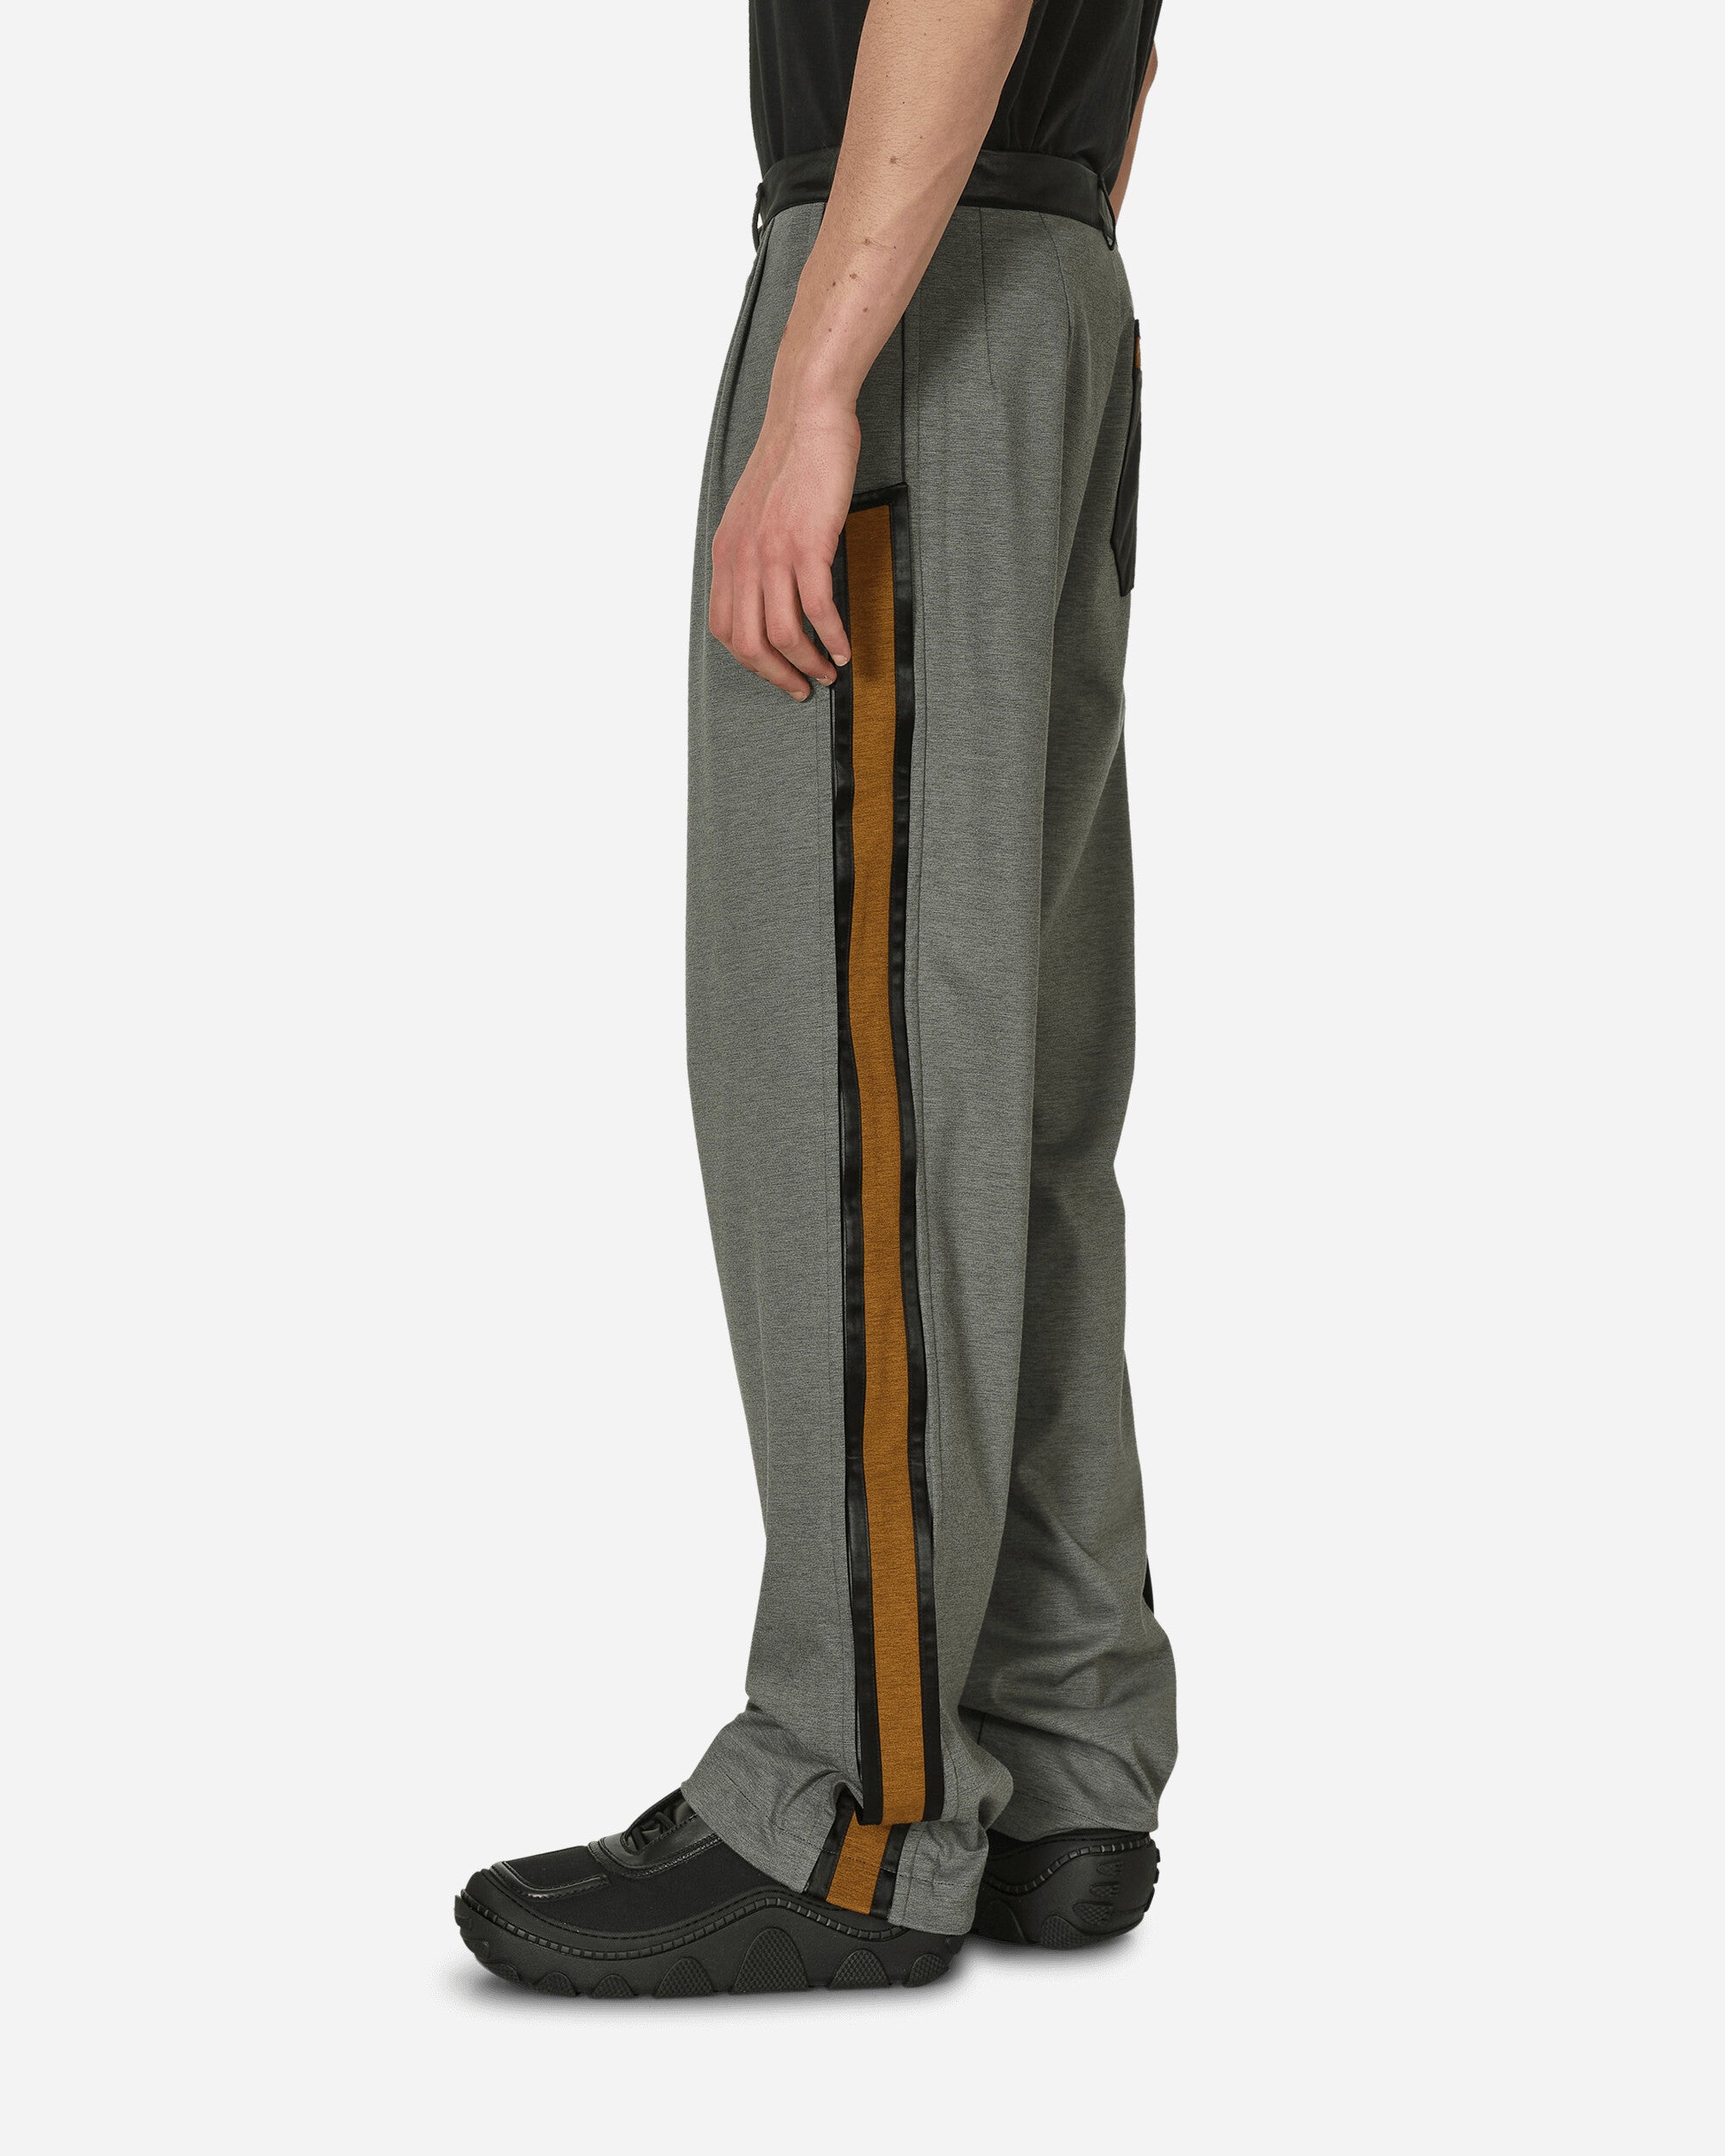 Kiko Kostadinov Ugo Side Trouser Iron Grey Pants Trousers KKSS24T01 01